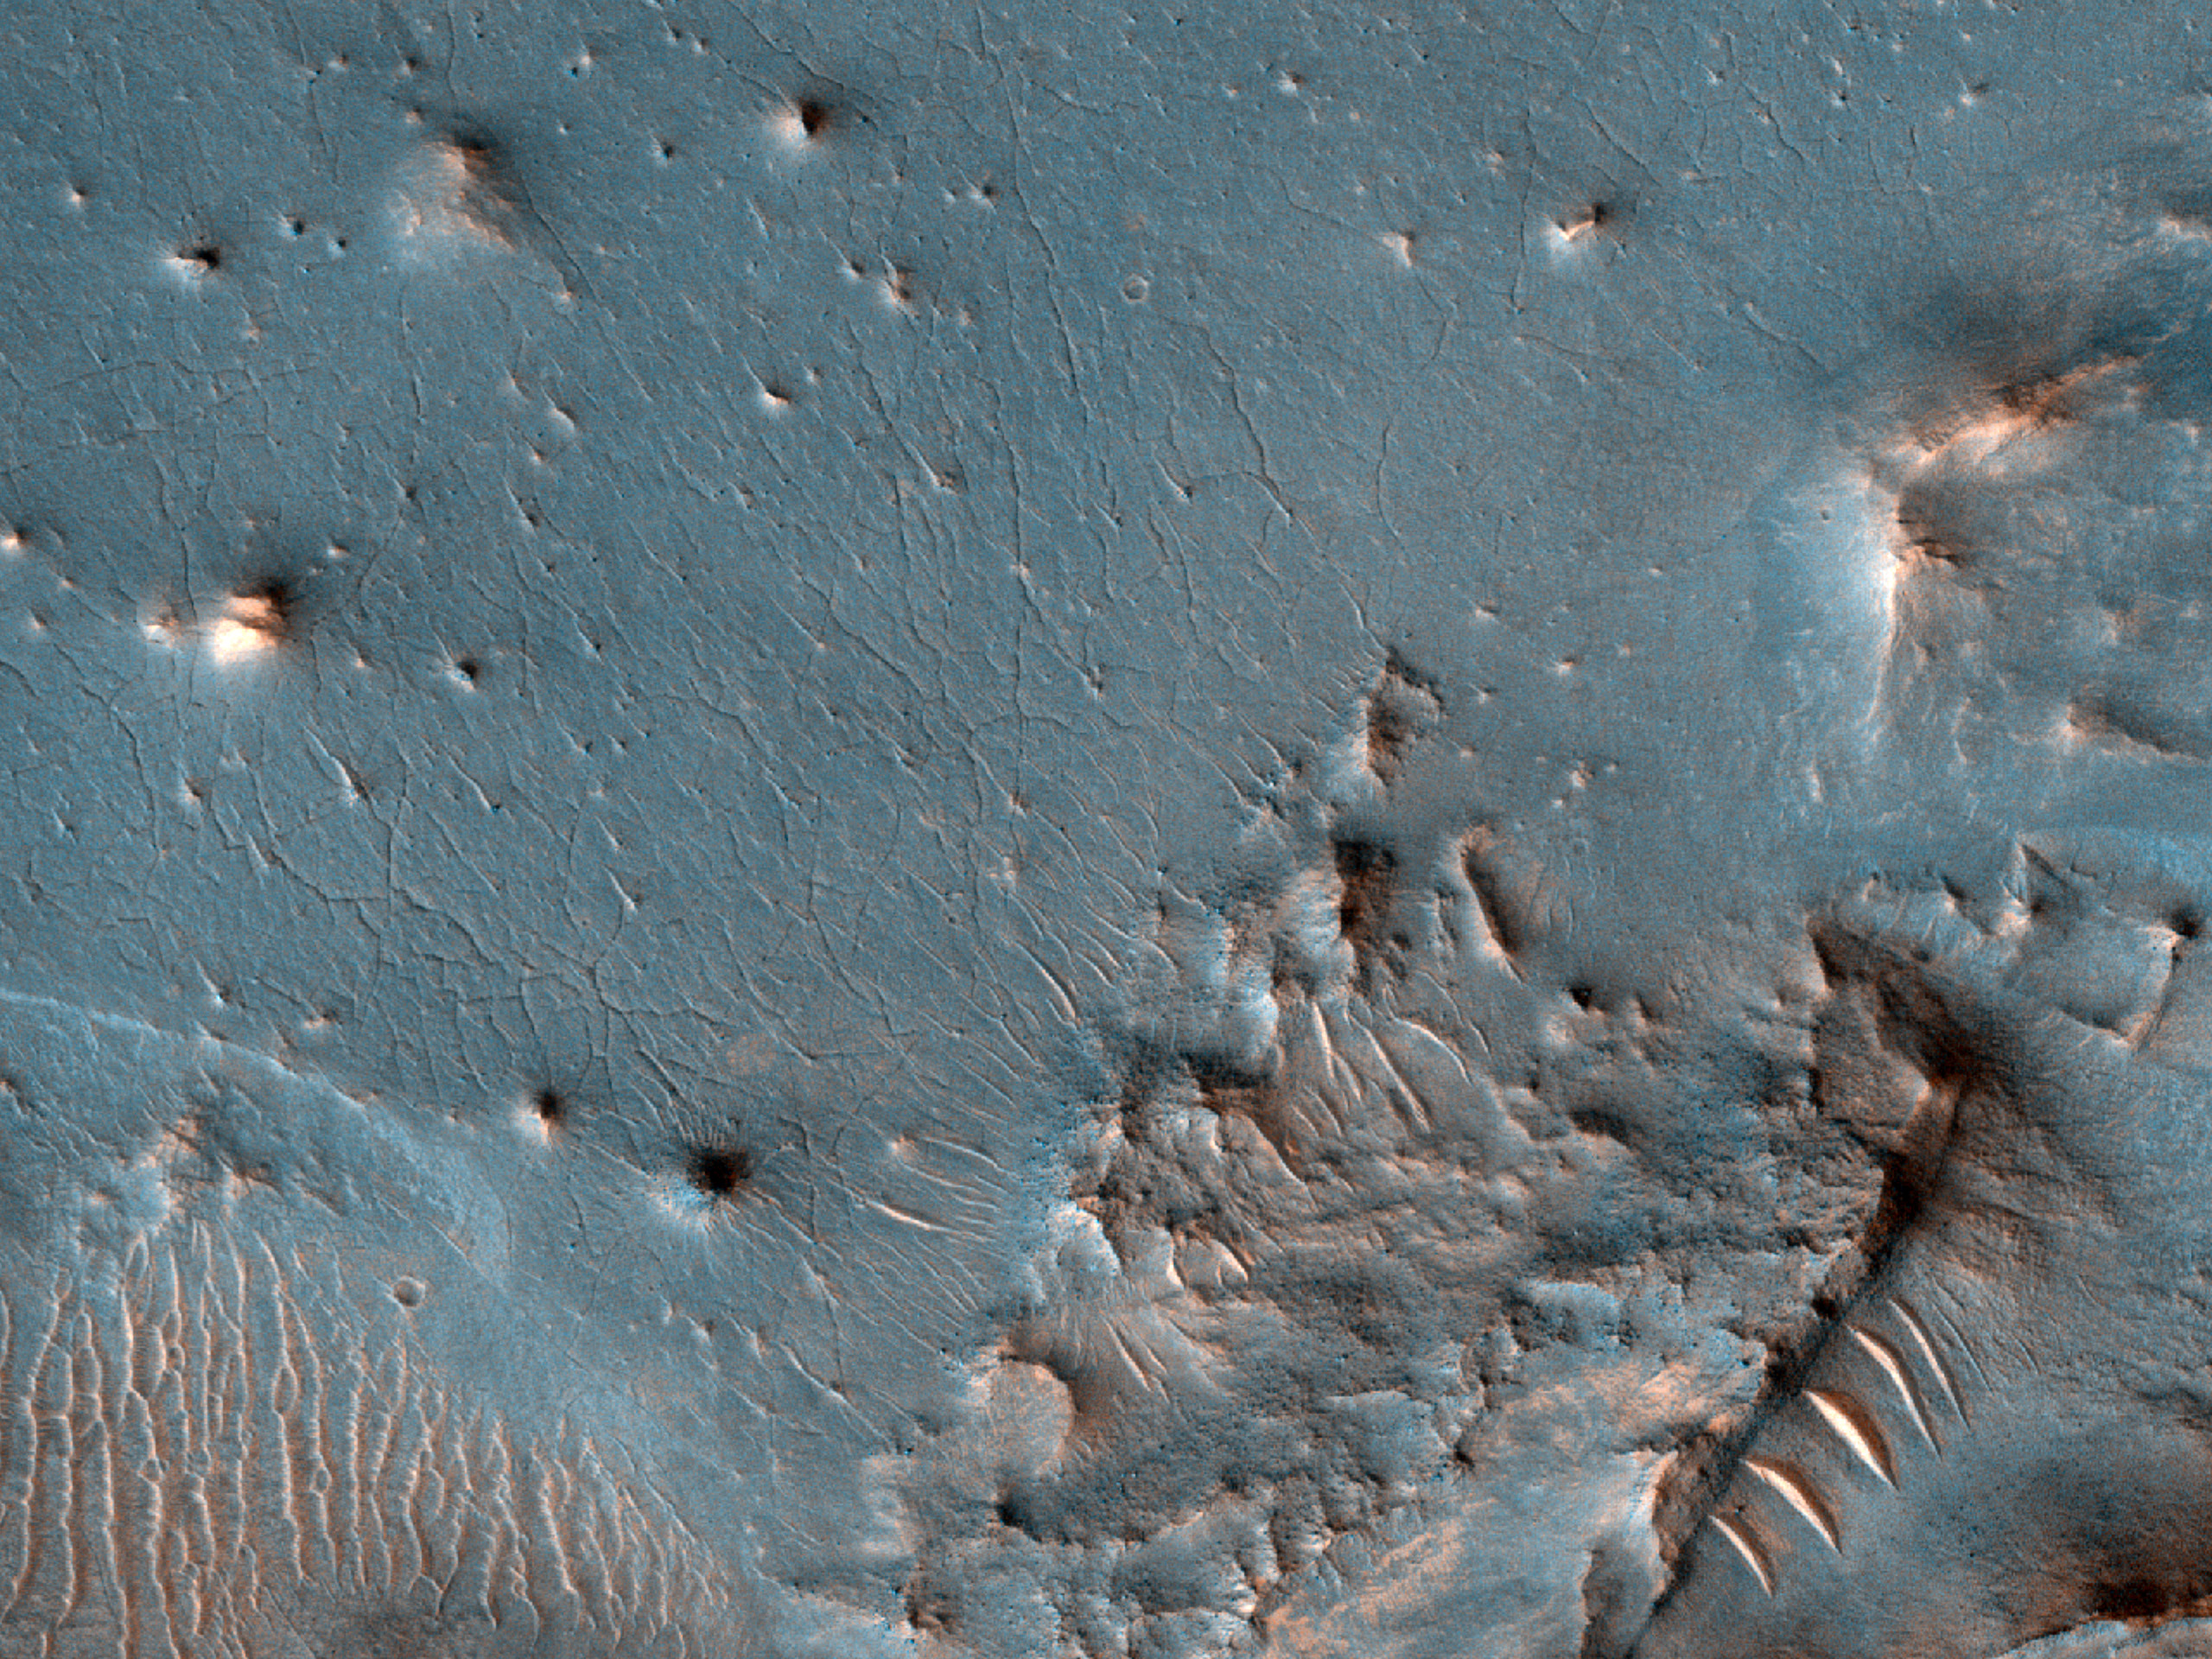 Possible Impact Melt in Crater Floor in Terra Sabaea